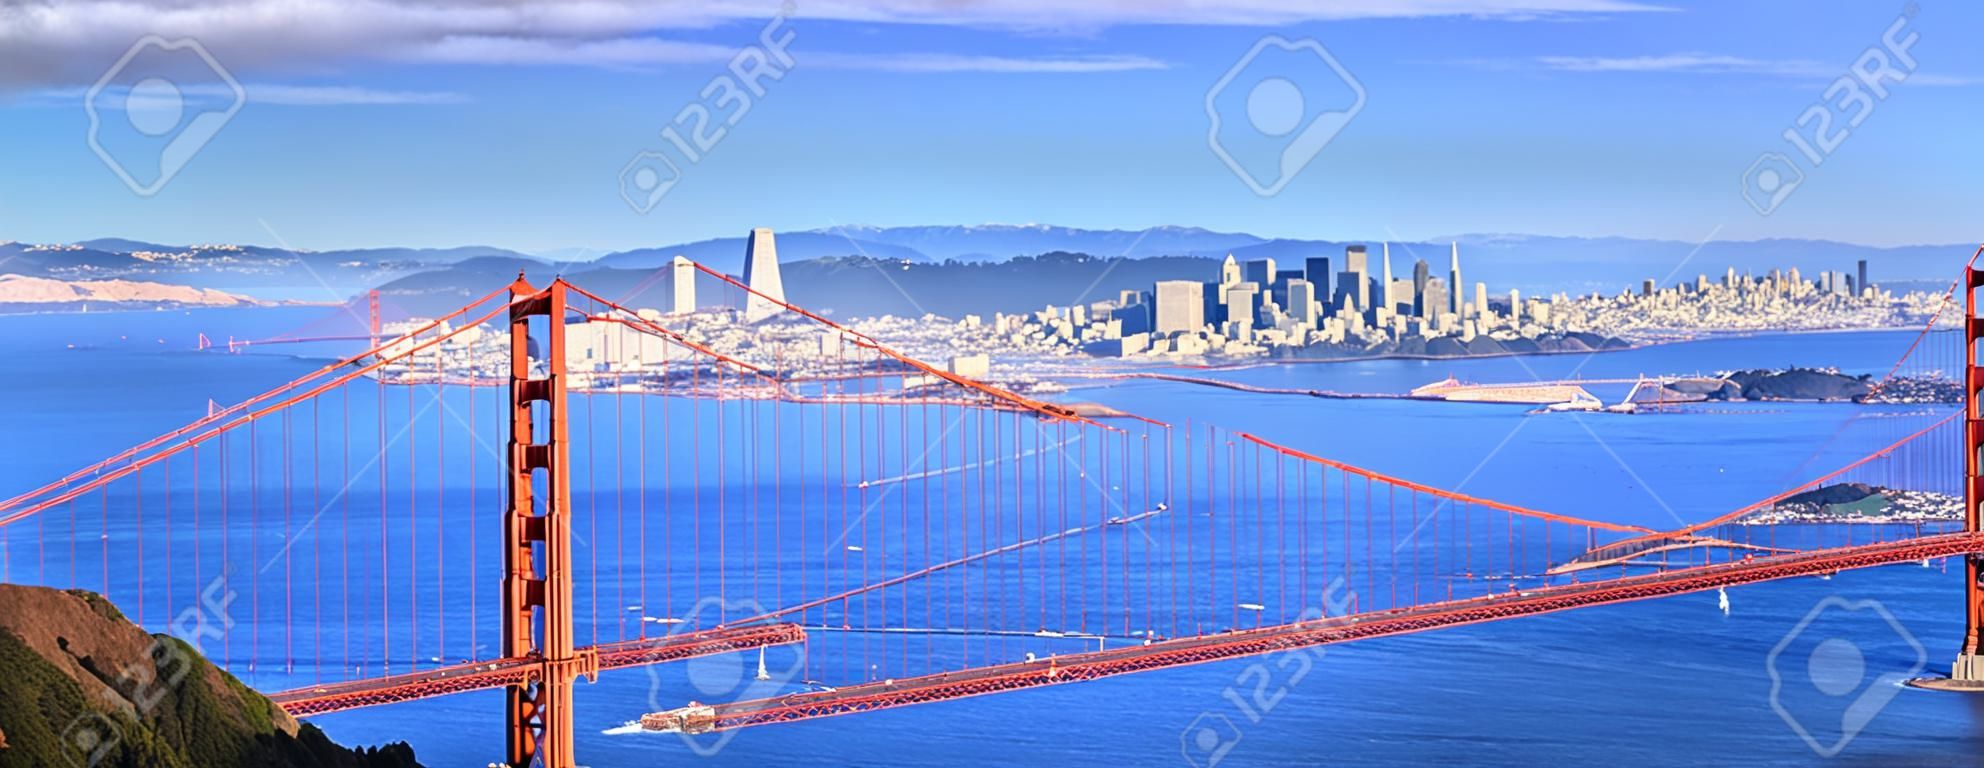 Панорамный вид на знаменитый мост Золотые Ворота и в центре Сан-Франциско